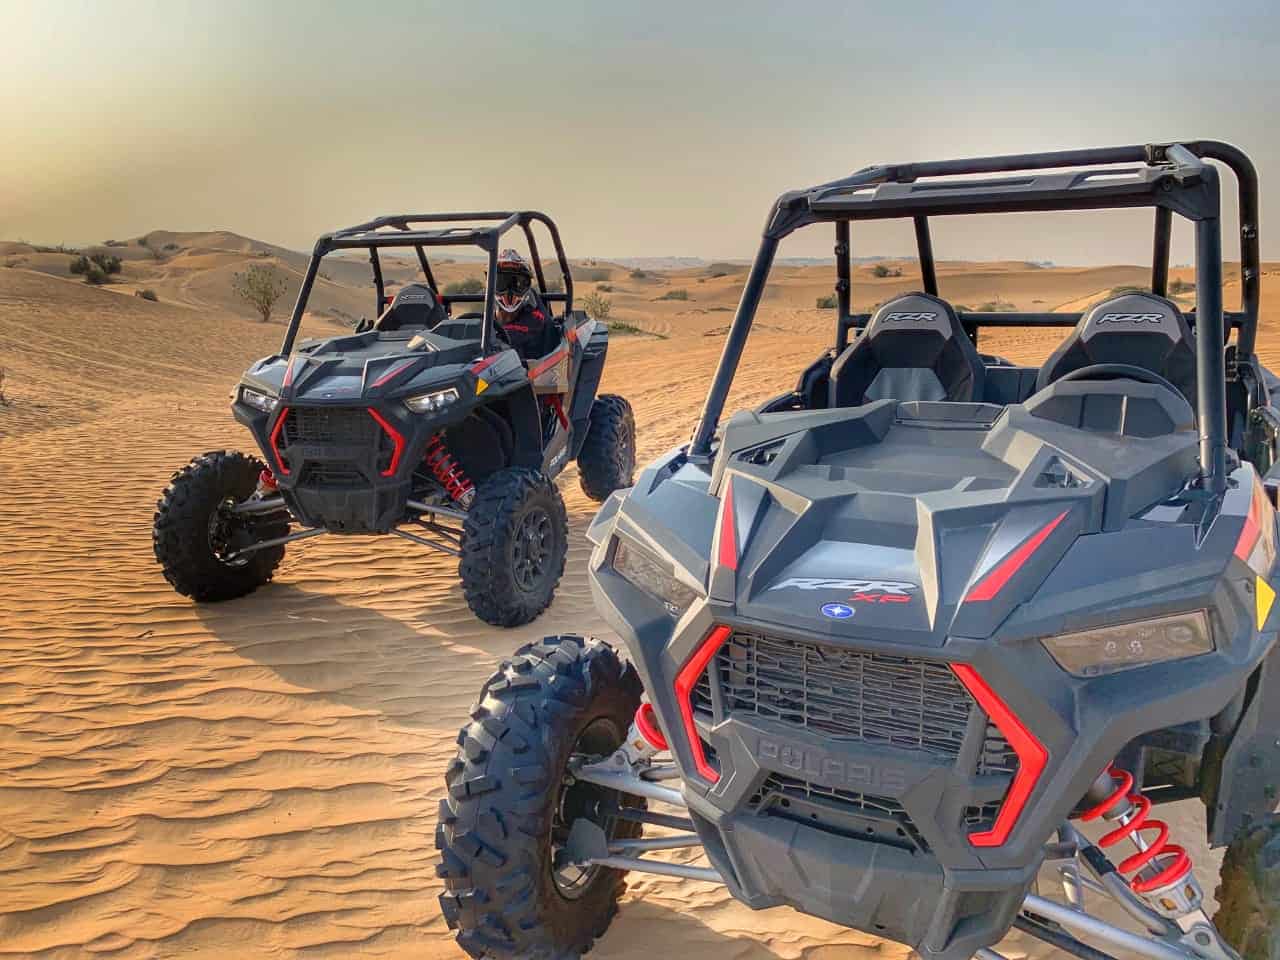 dune buggy dubai tours in desert